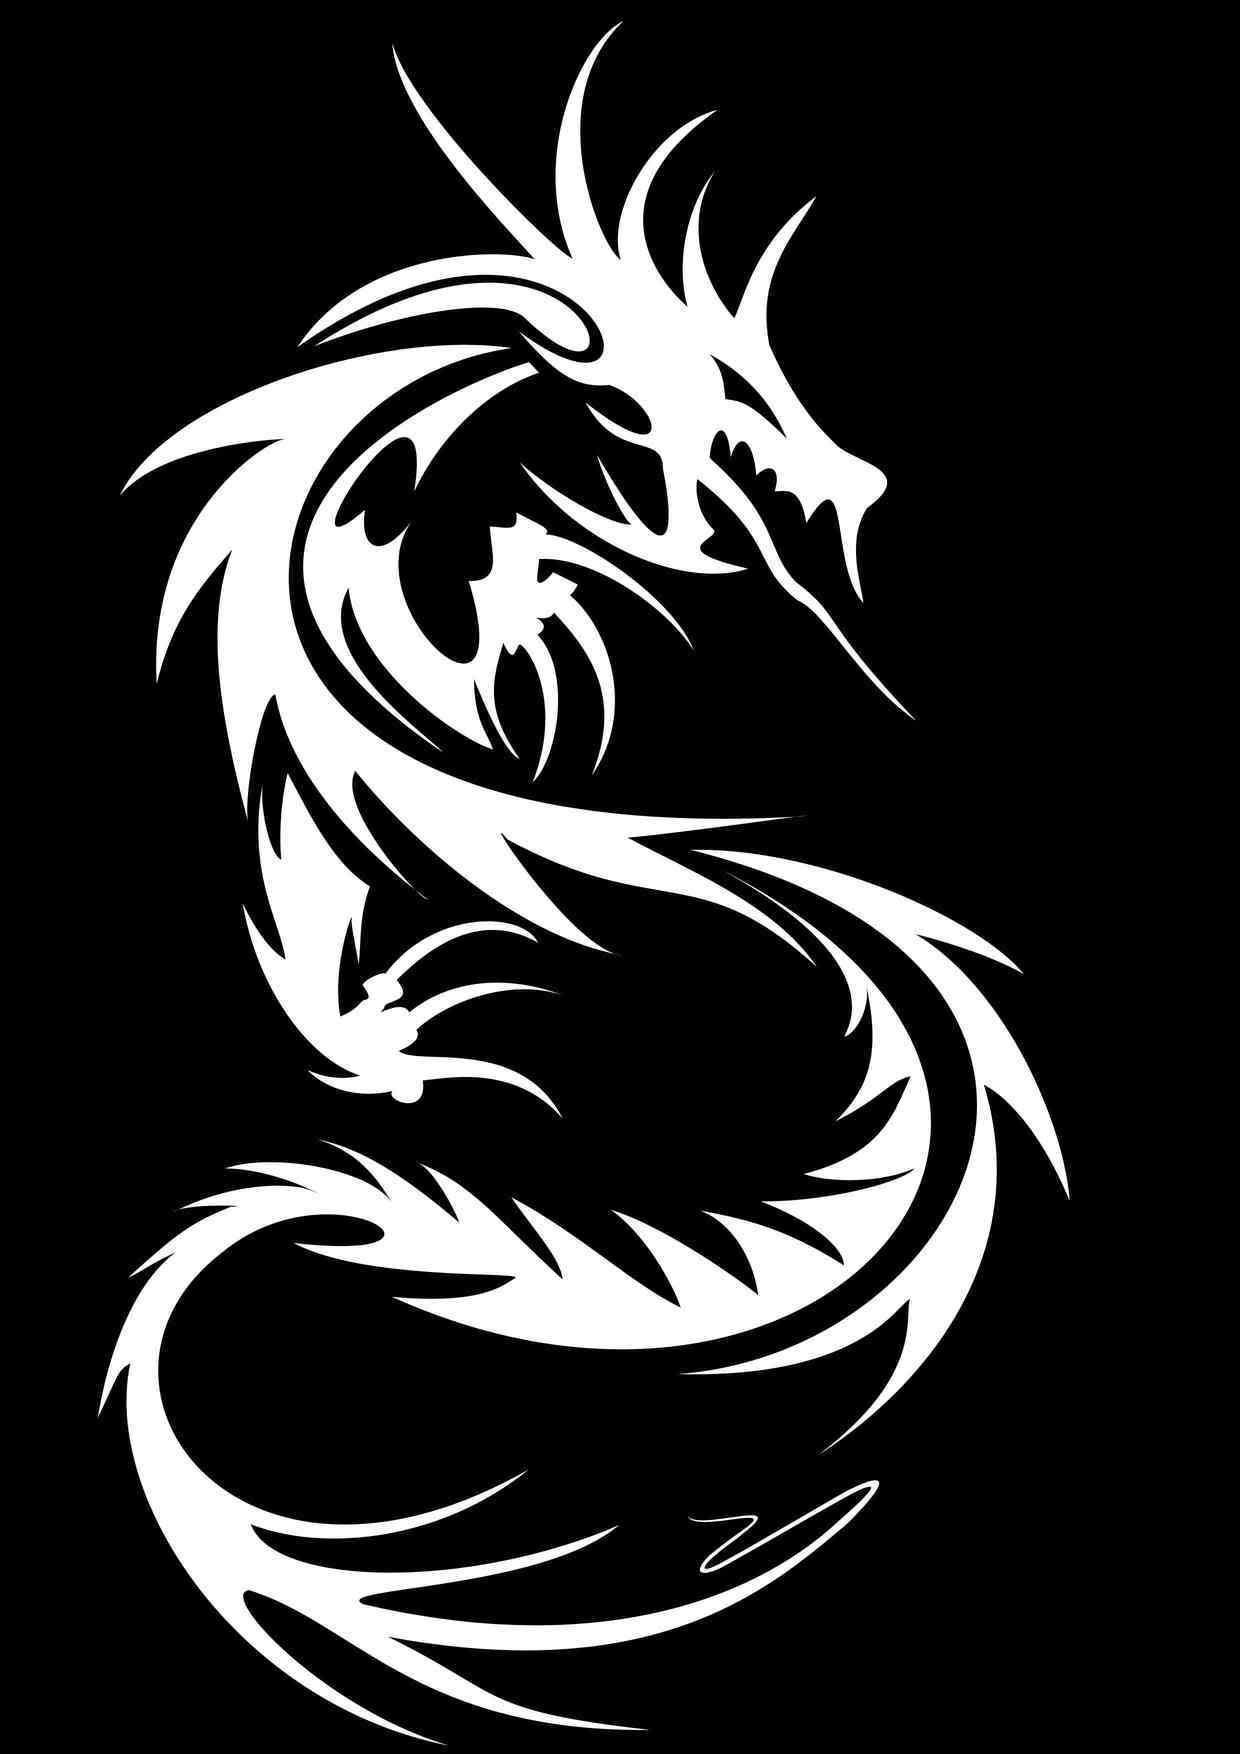 [BD]Black.Dragons